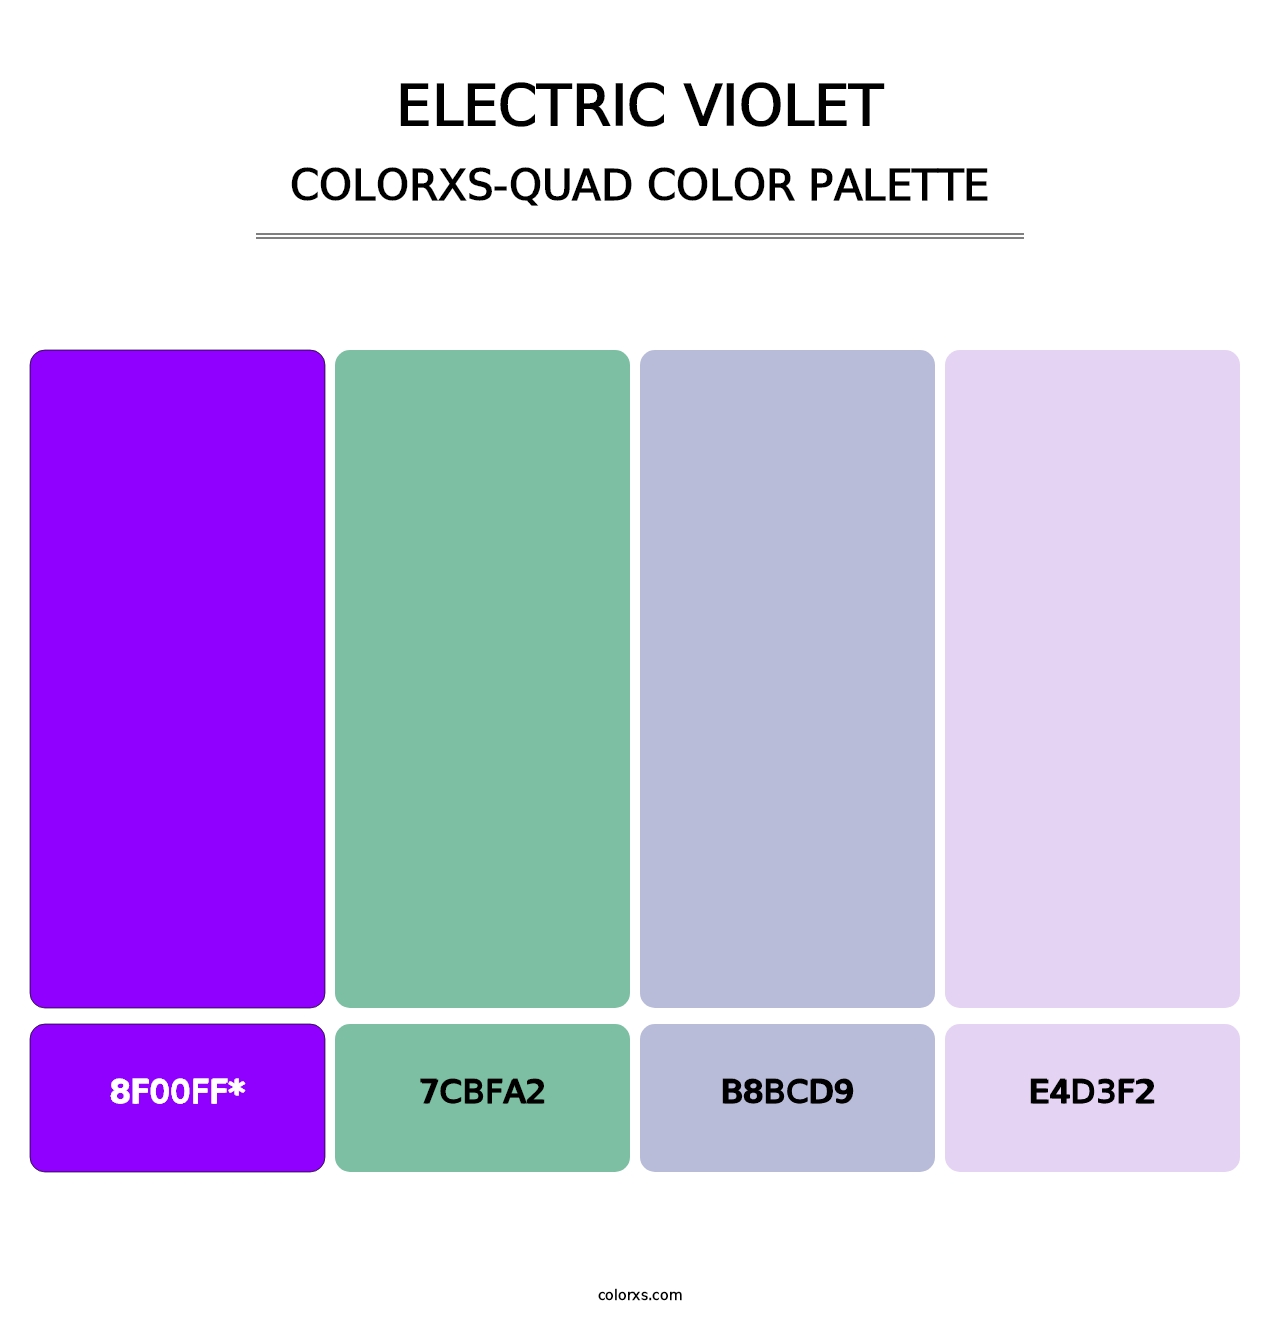 Electric Violet - Colorxs Quad Palette